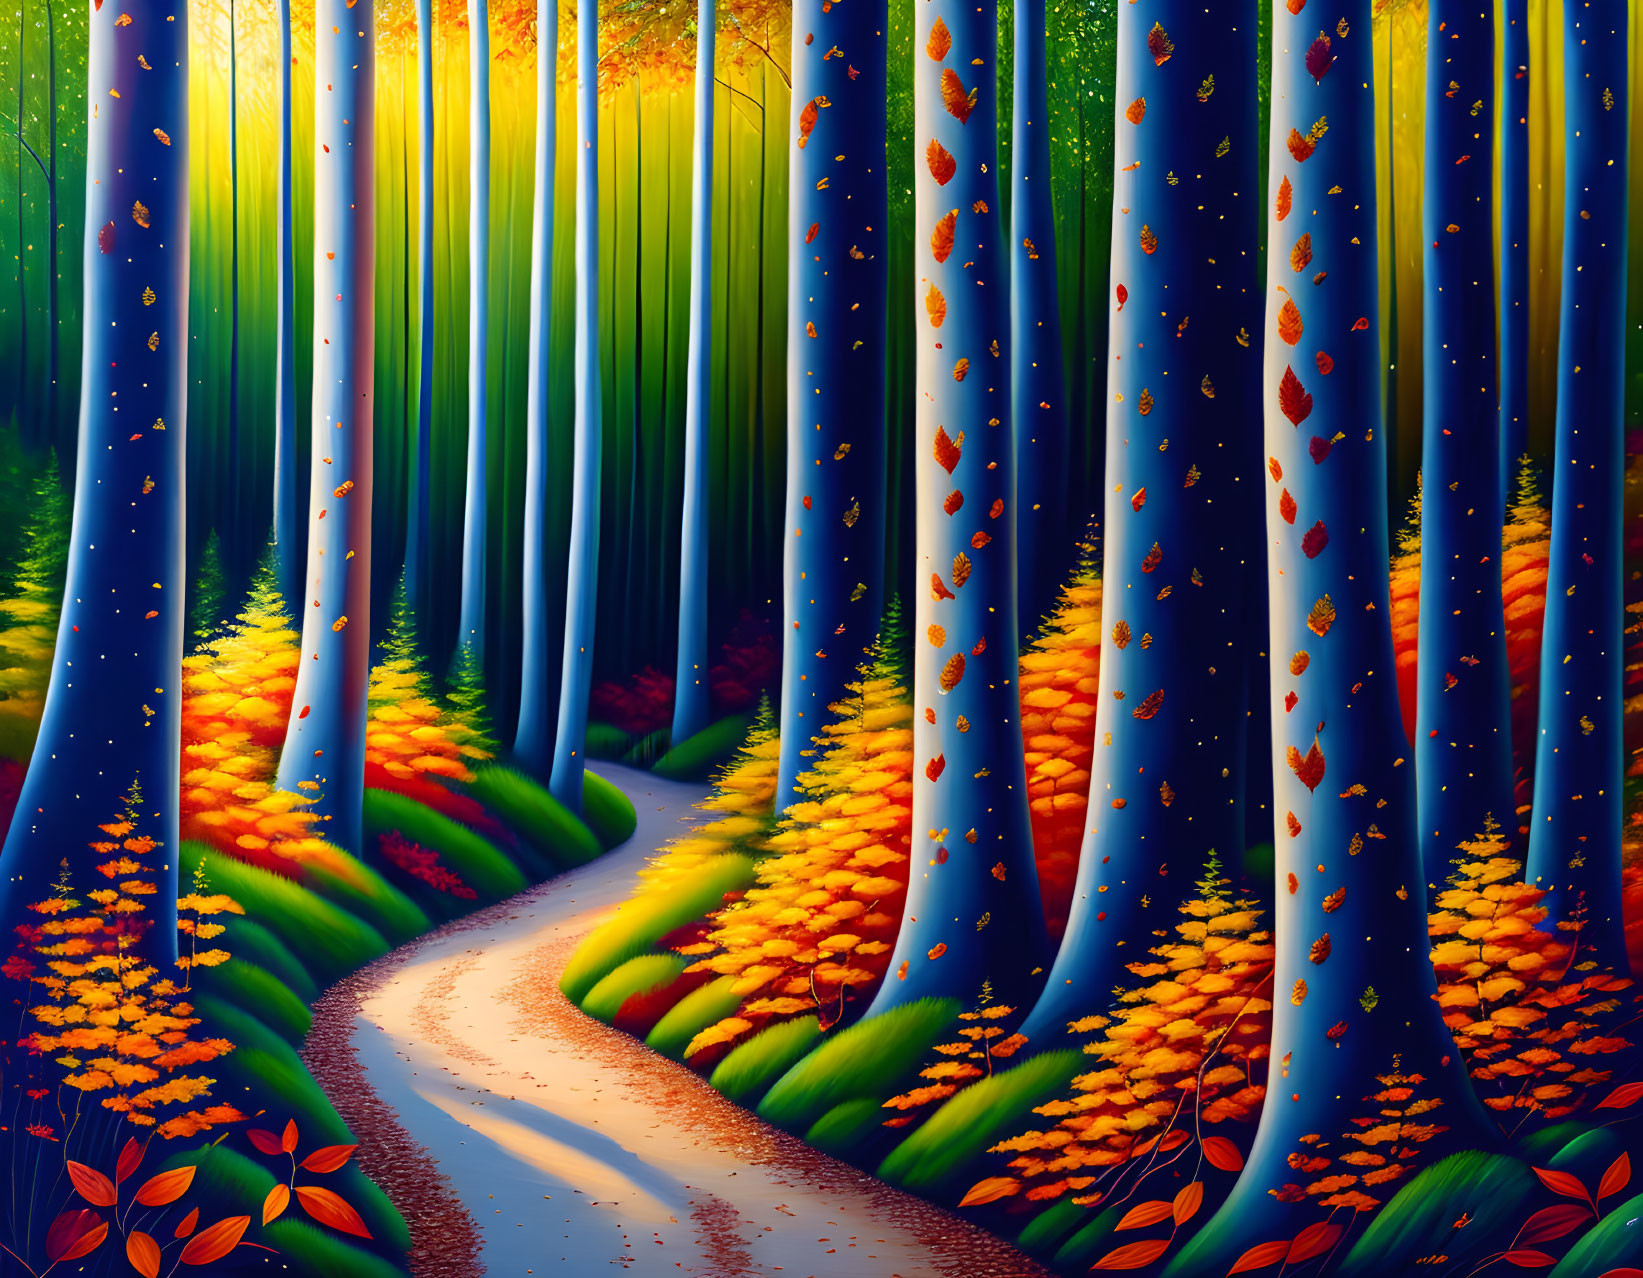 Path: Through a Lush Forest #1